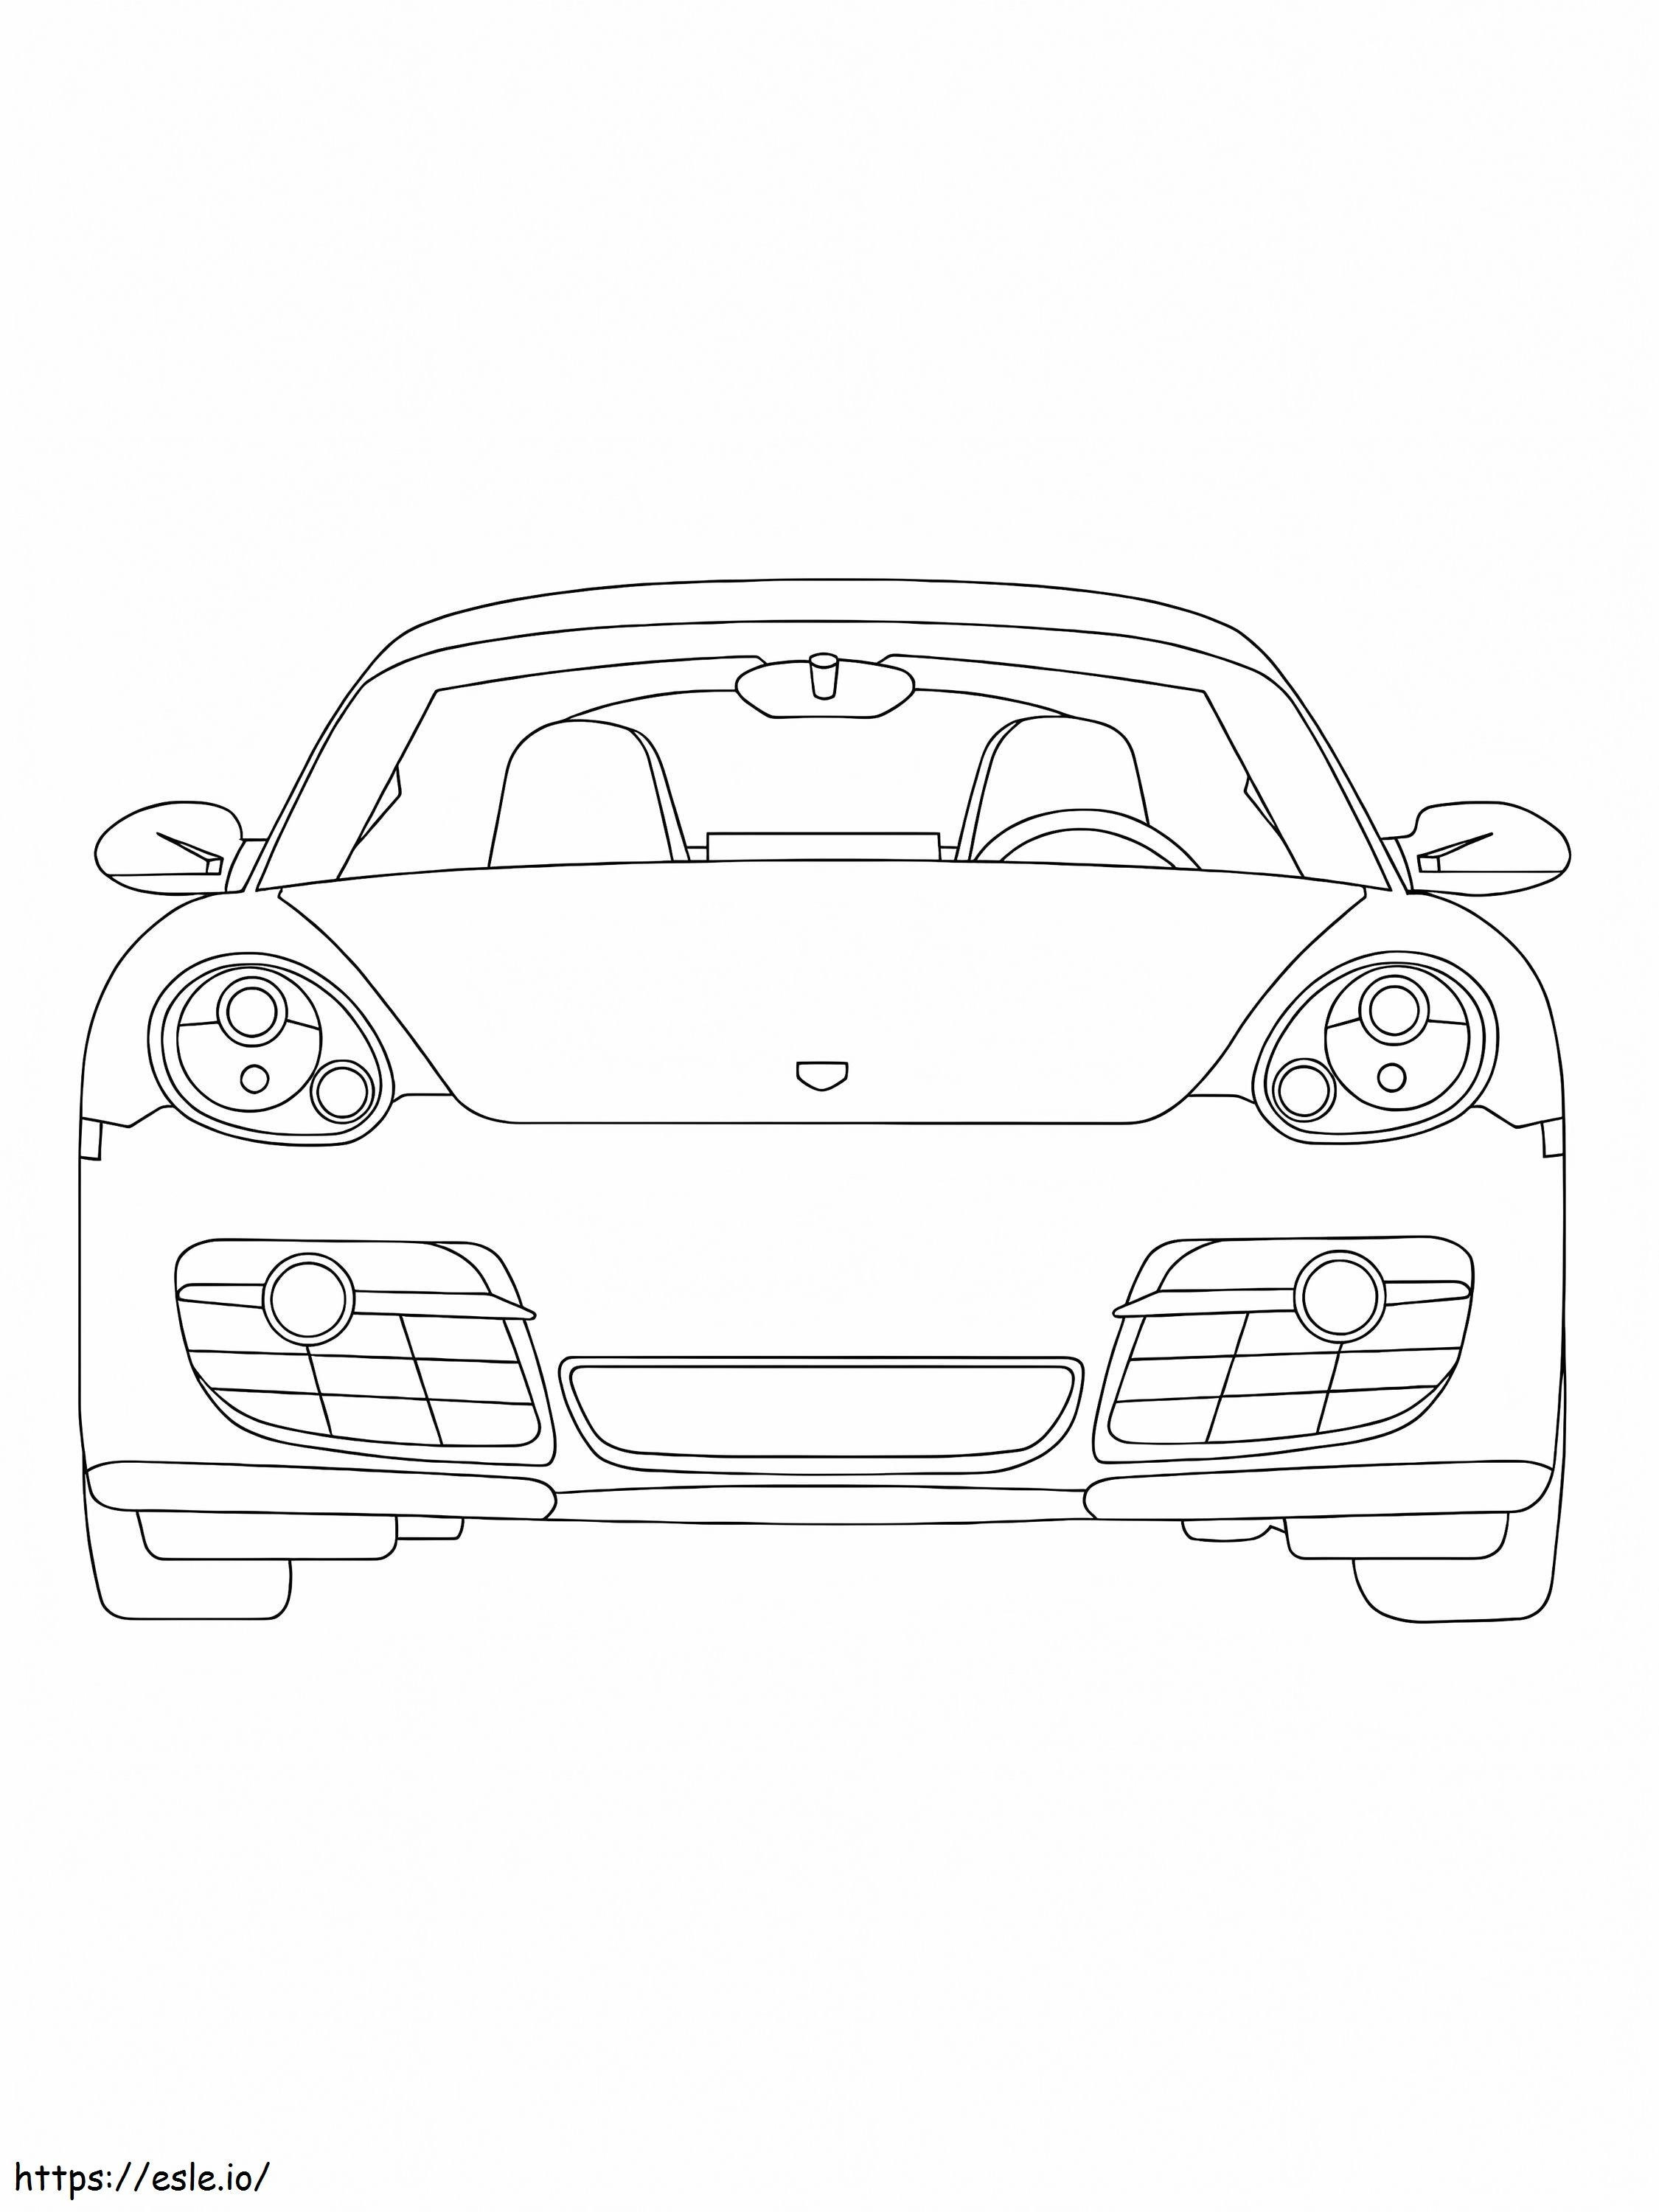 Coche deportivo Porsche 3 para colorear